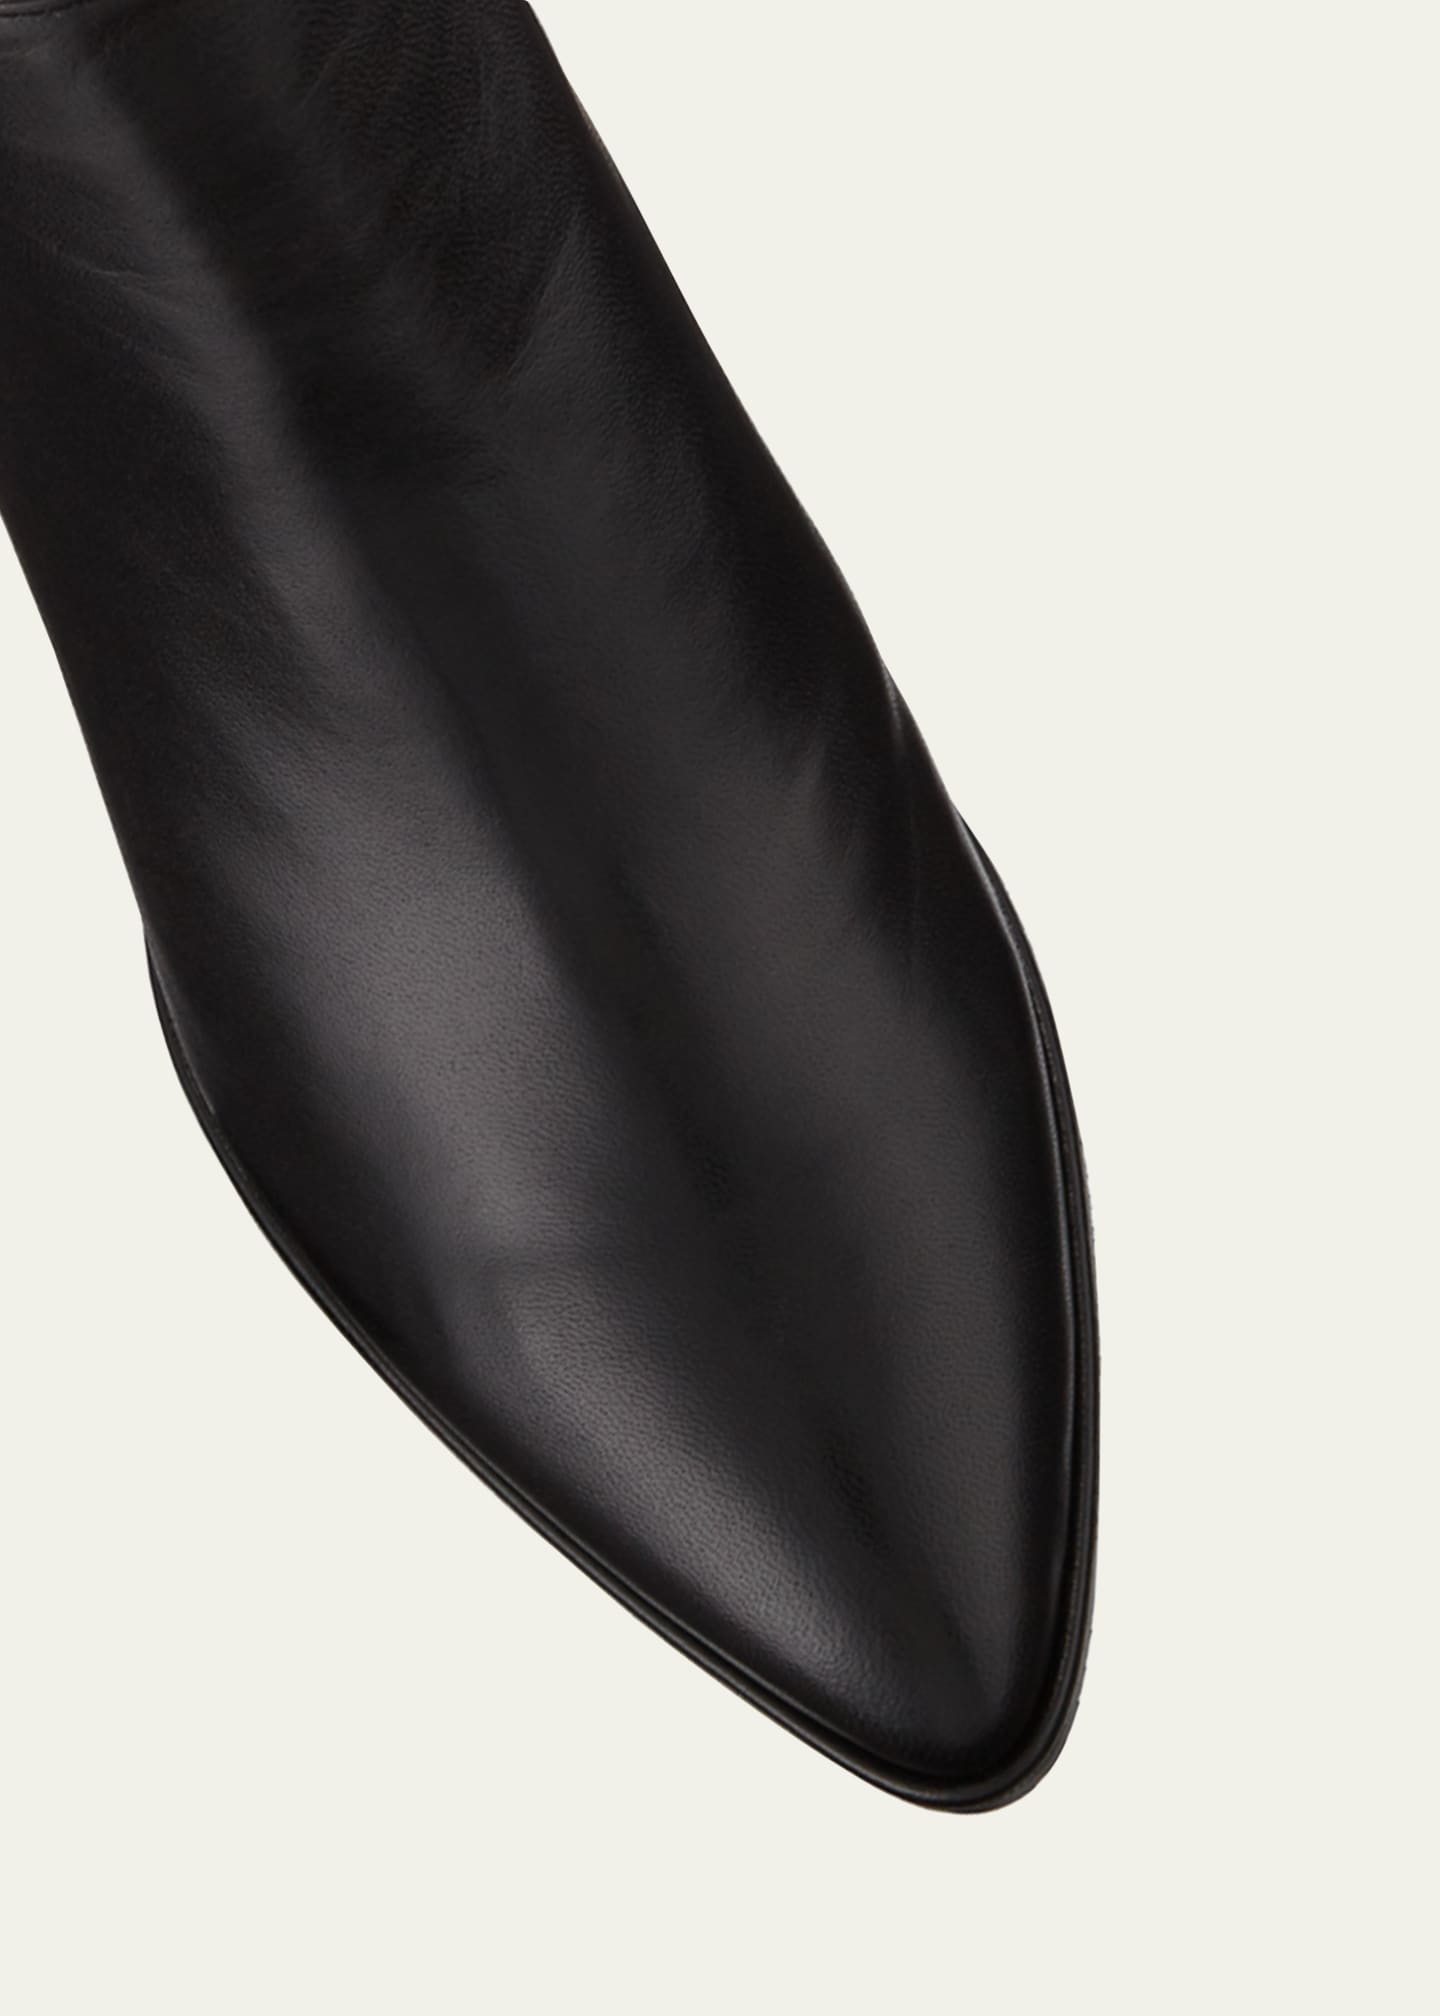 Stuart Weitzman Gardiner Leather Block-Heel Ankle Booties Image 3 of 3